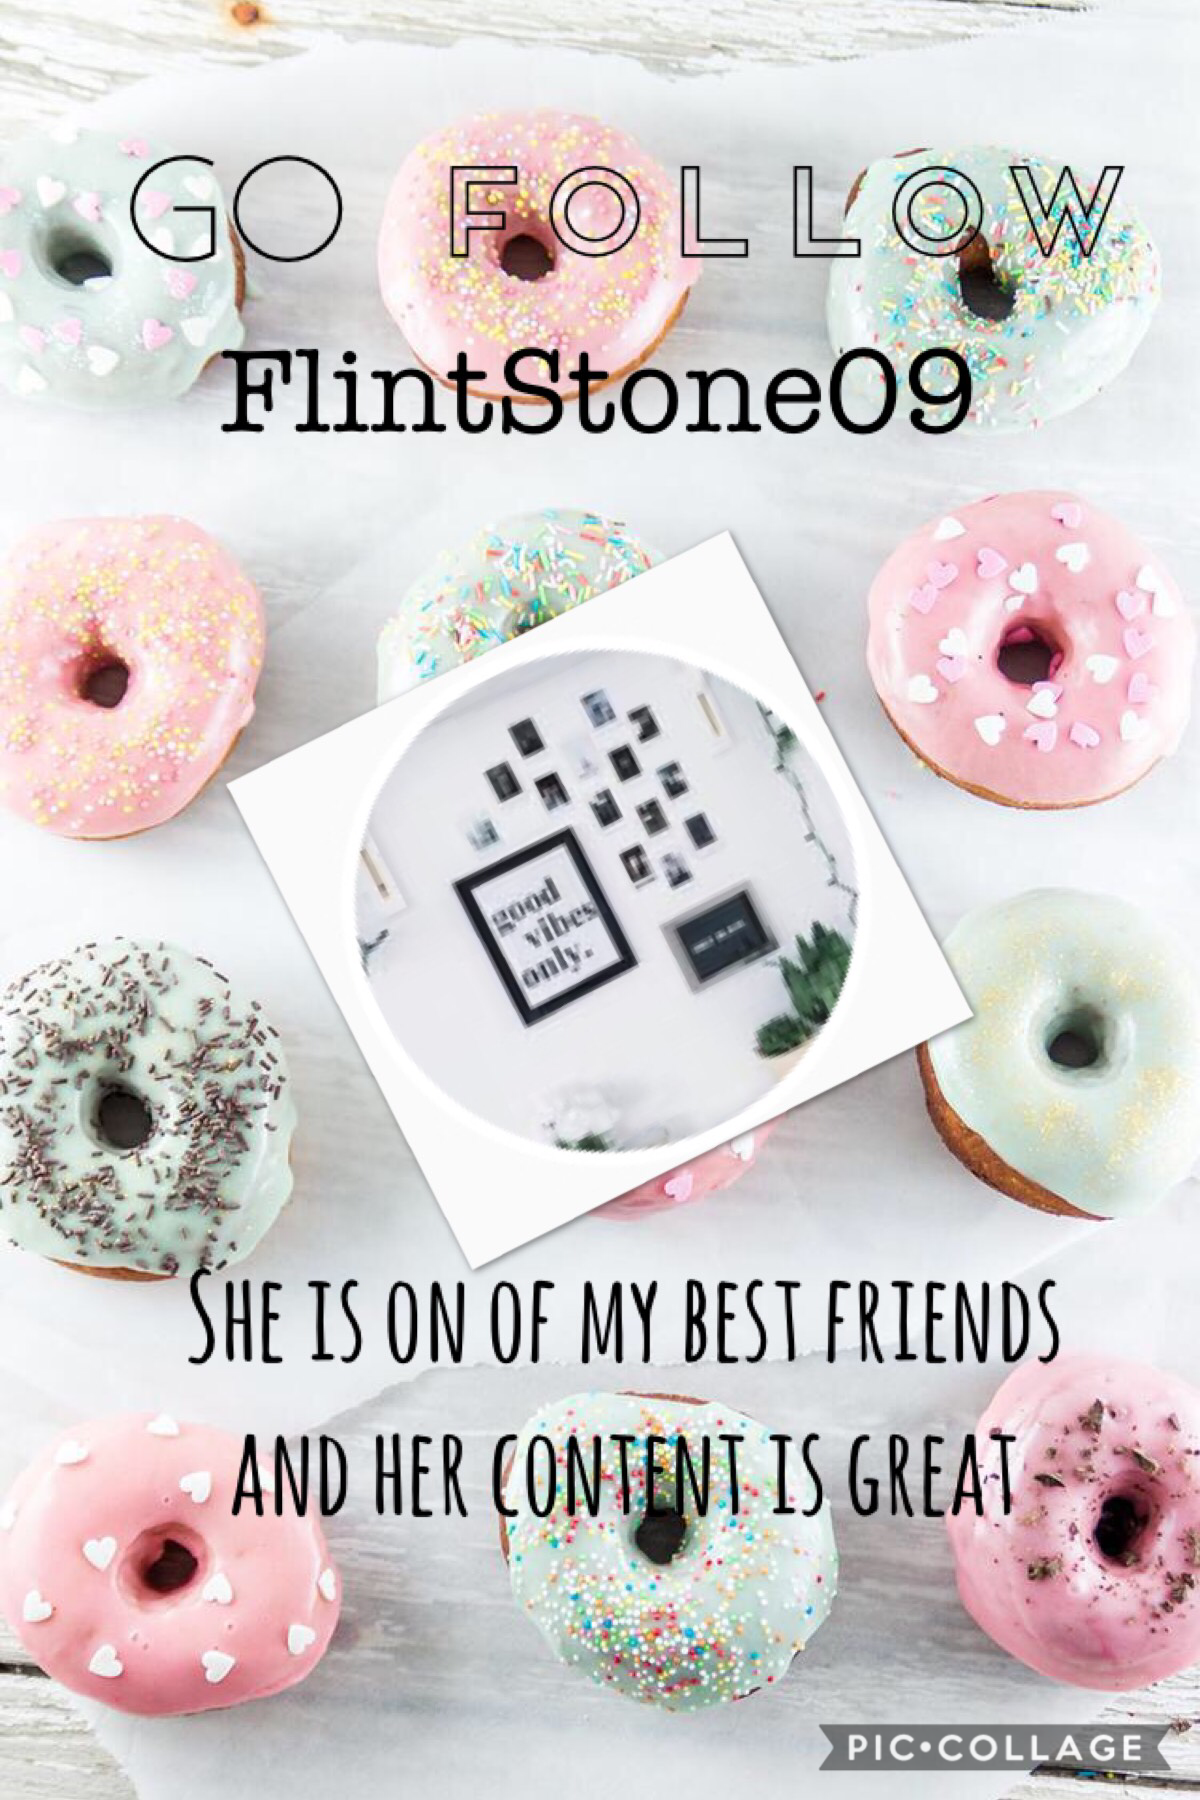 Go follow FlintStone09